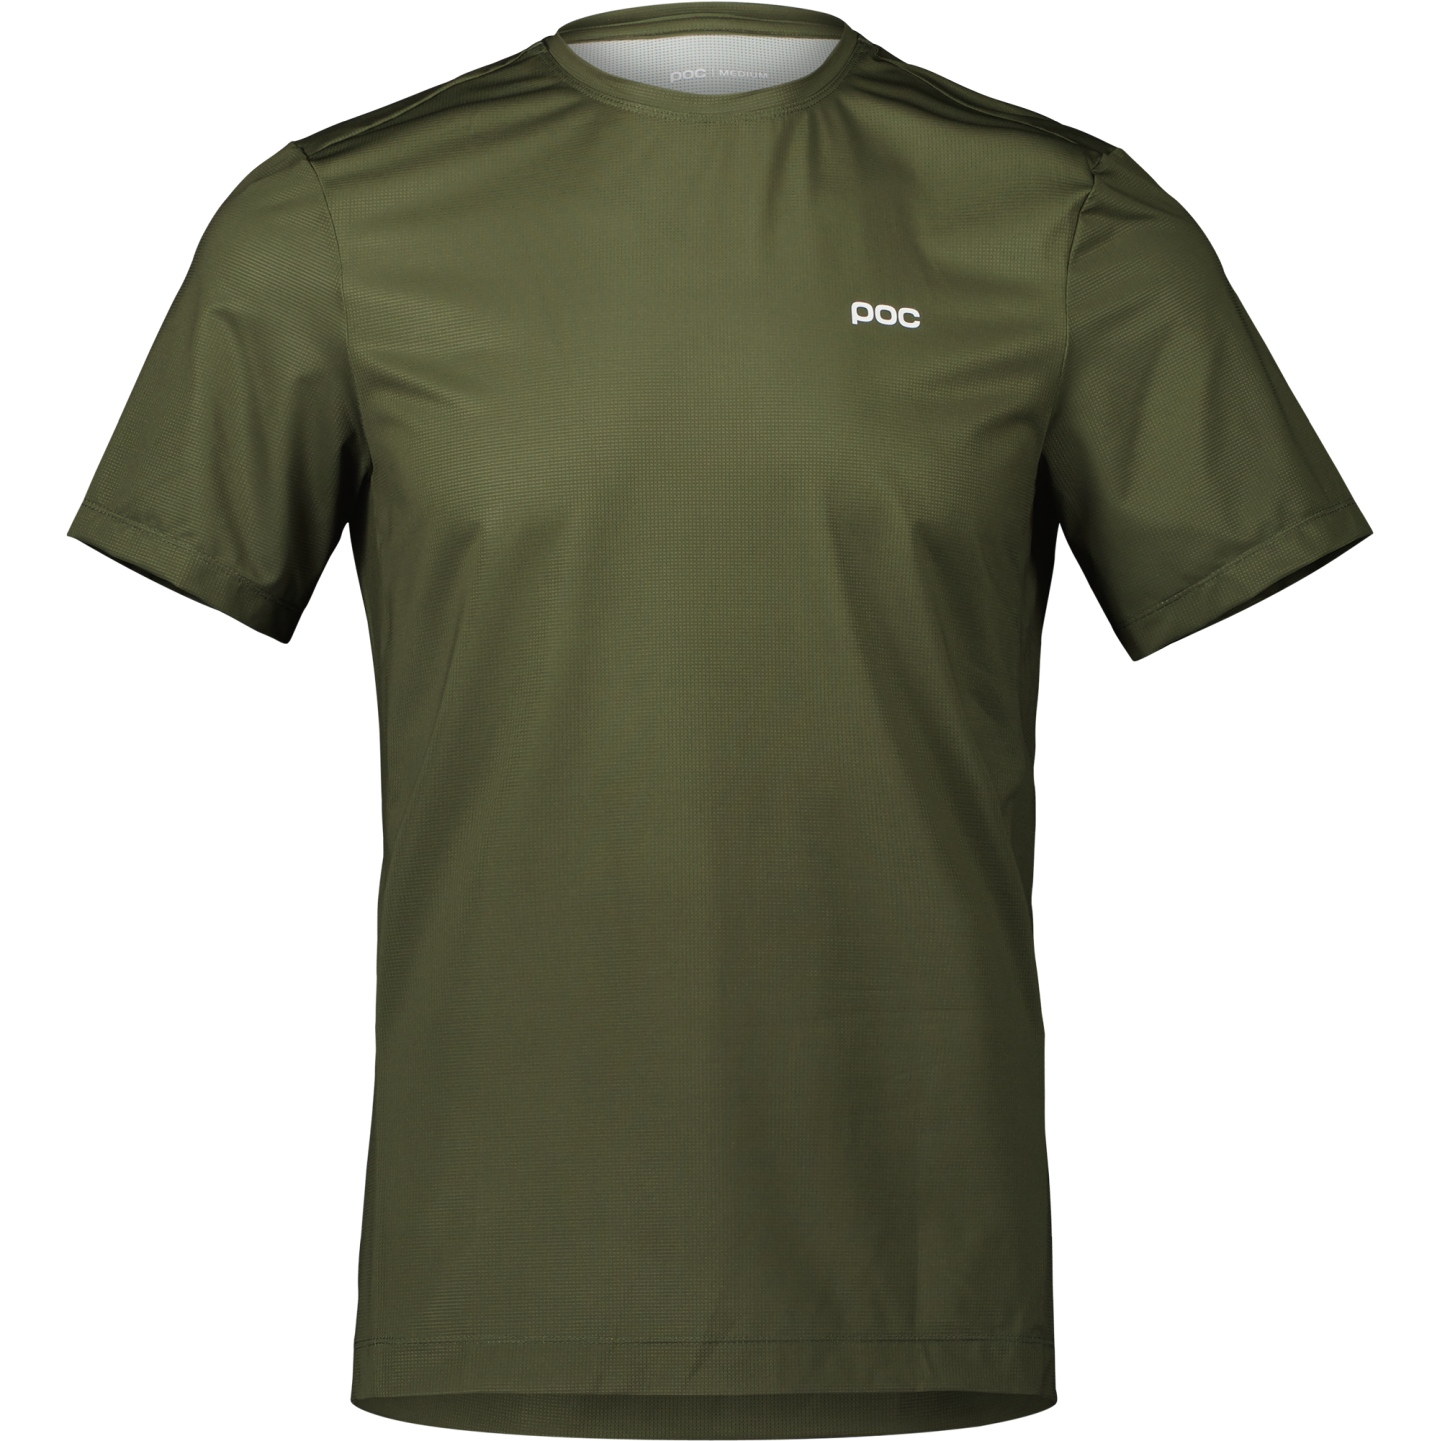 Produktbild von POC Air T-Shirt Herren - 1460 Epidote Green